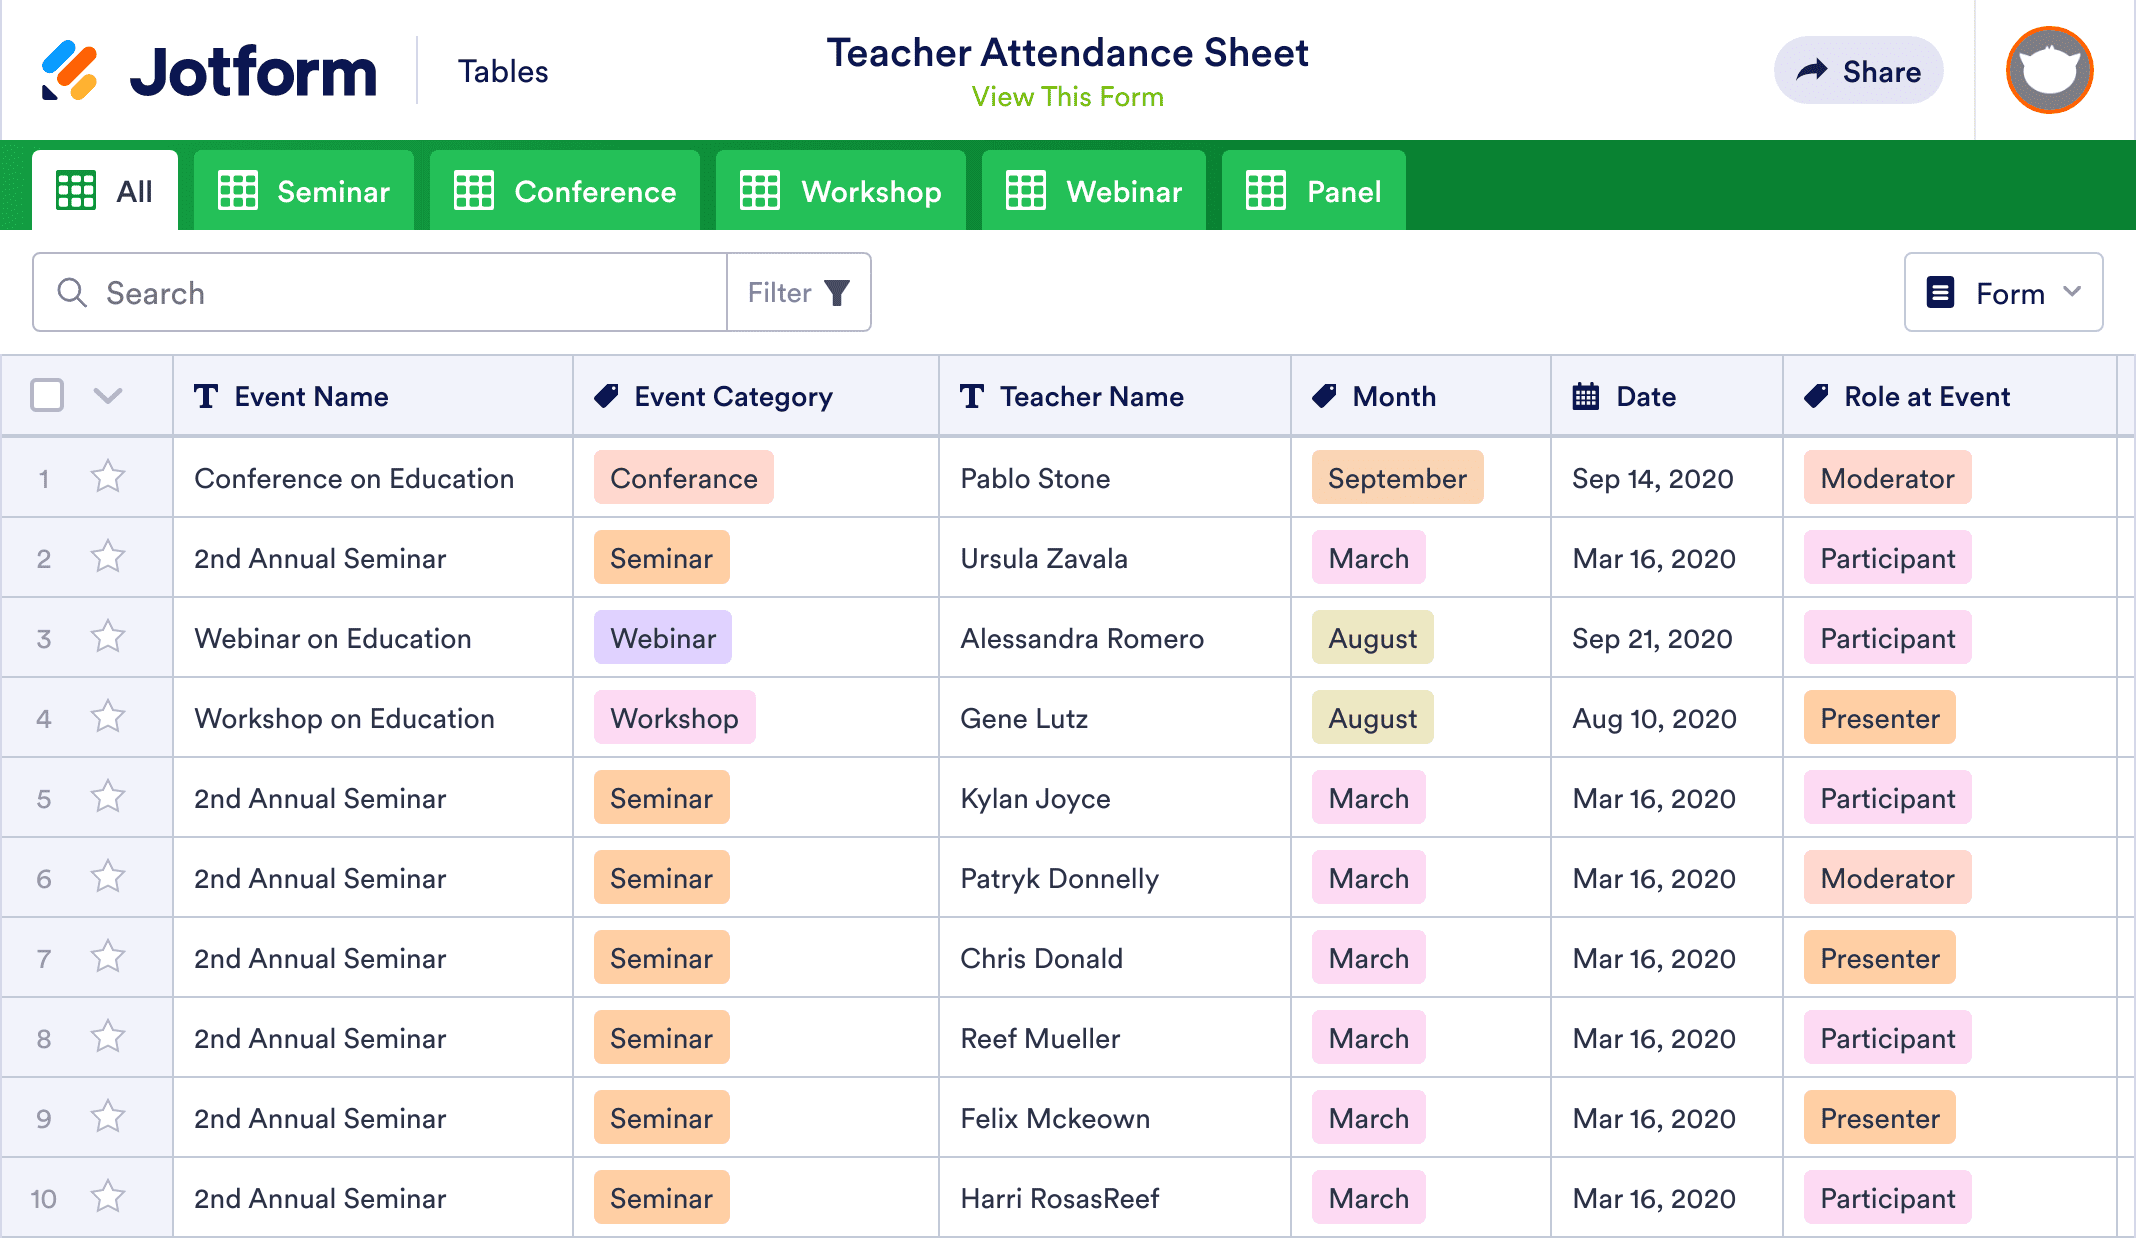 Teacher Attendance Sheet